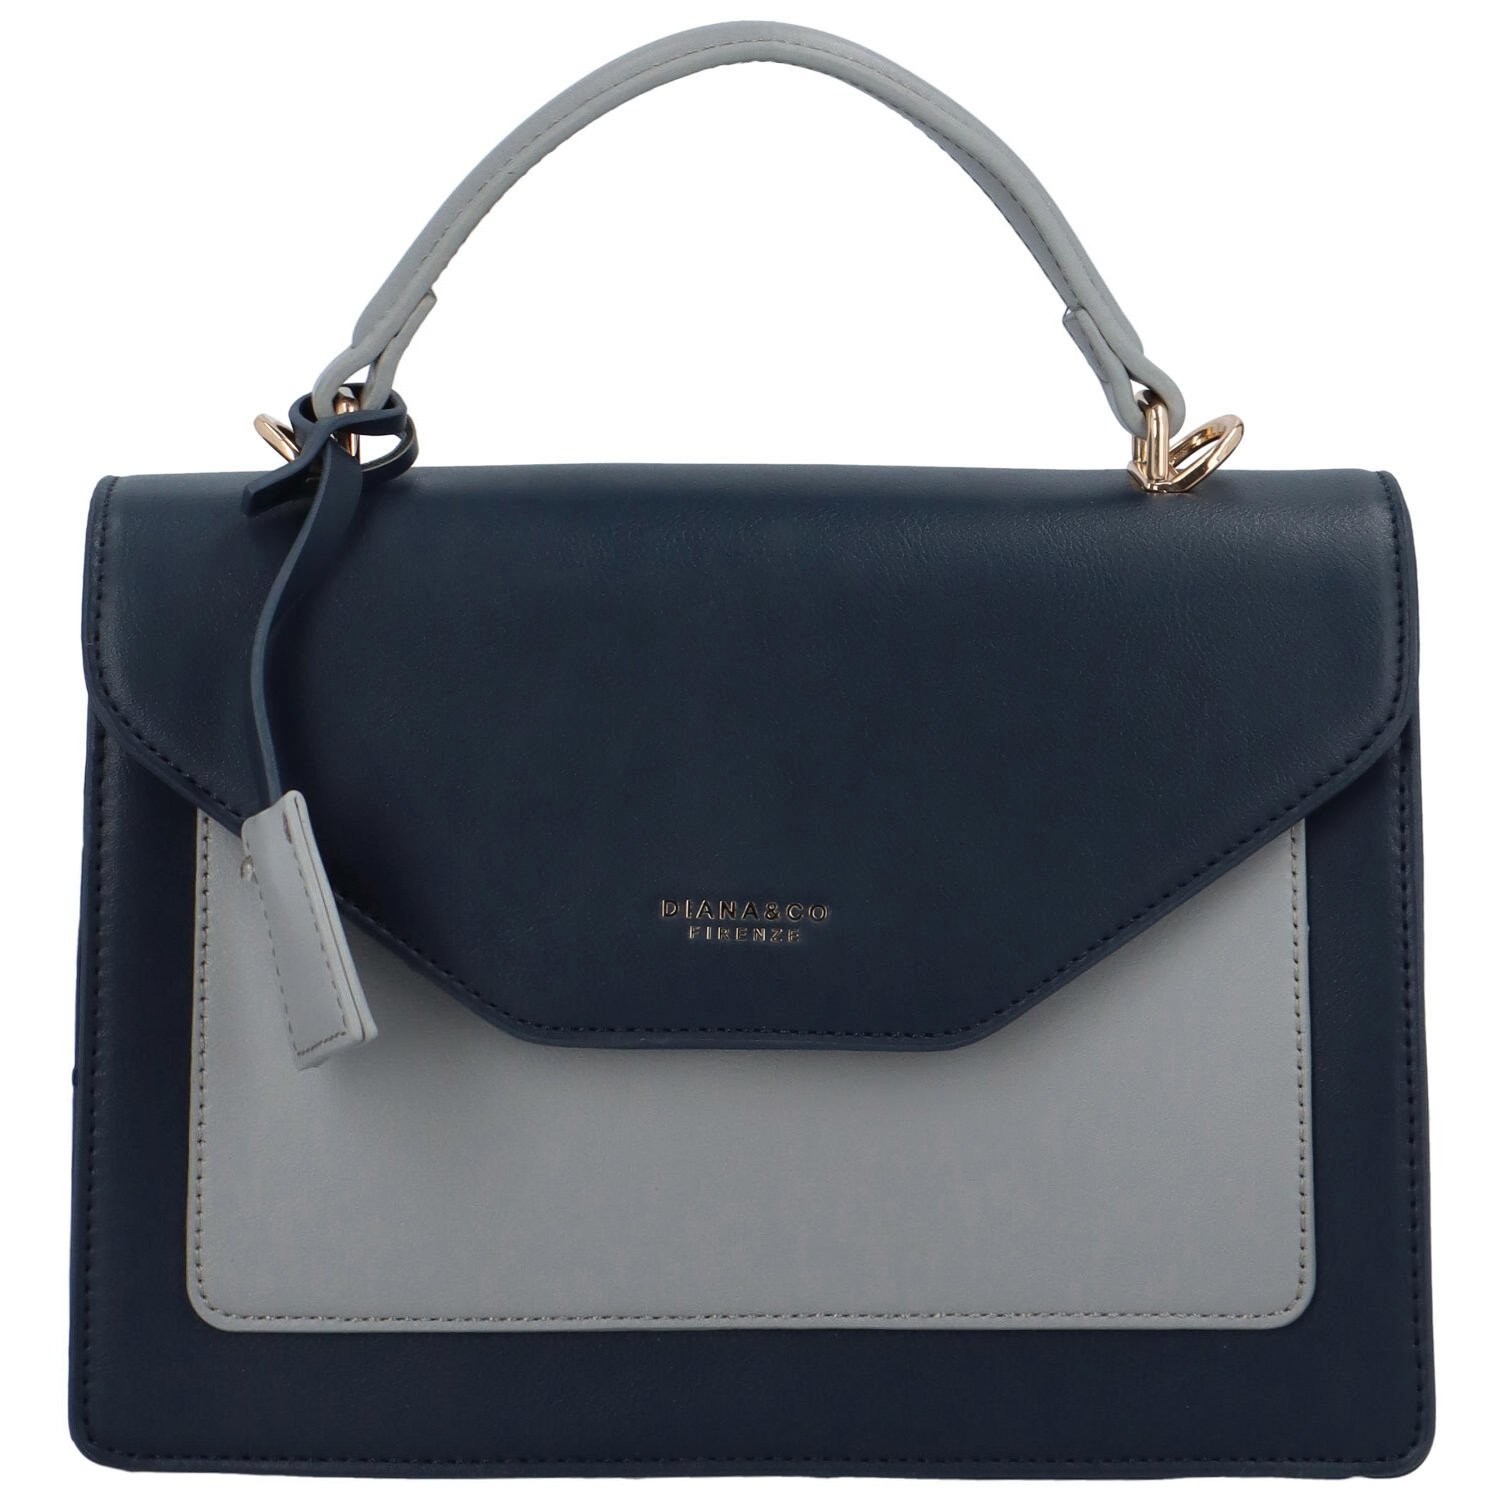 Luxusní dámská kabelka do ruky námořnická modrá - DIANA & CO Renee modrá